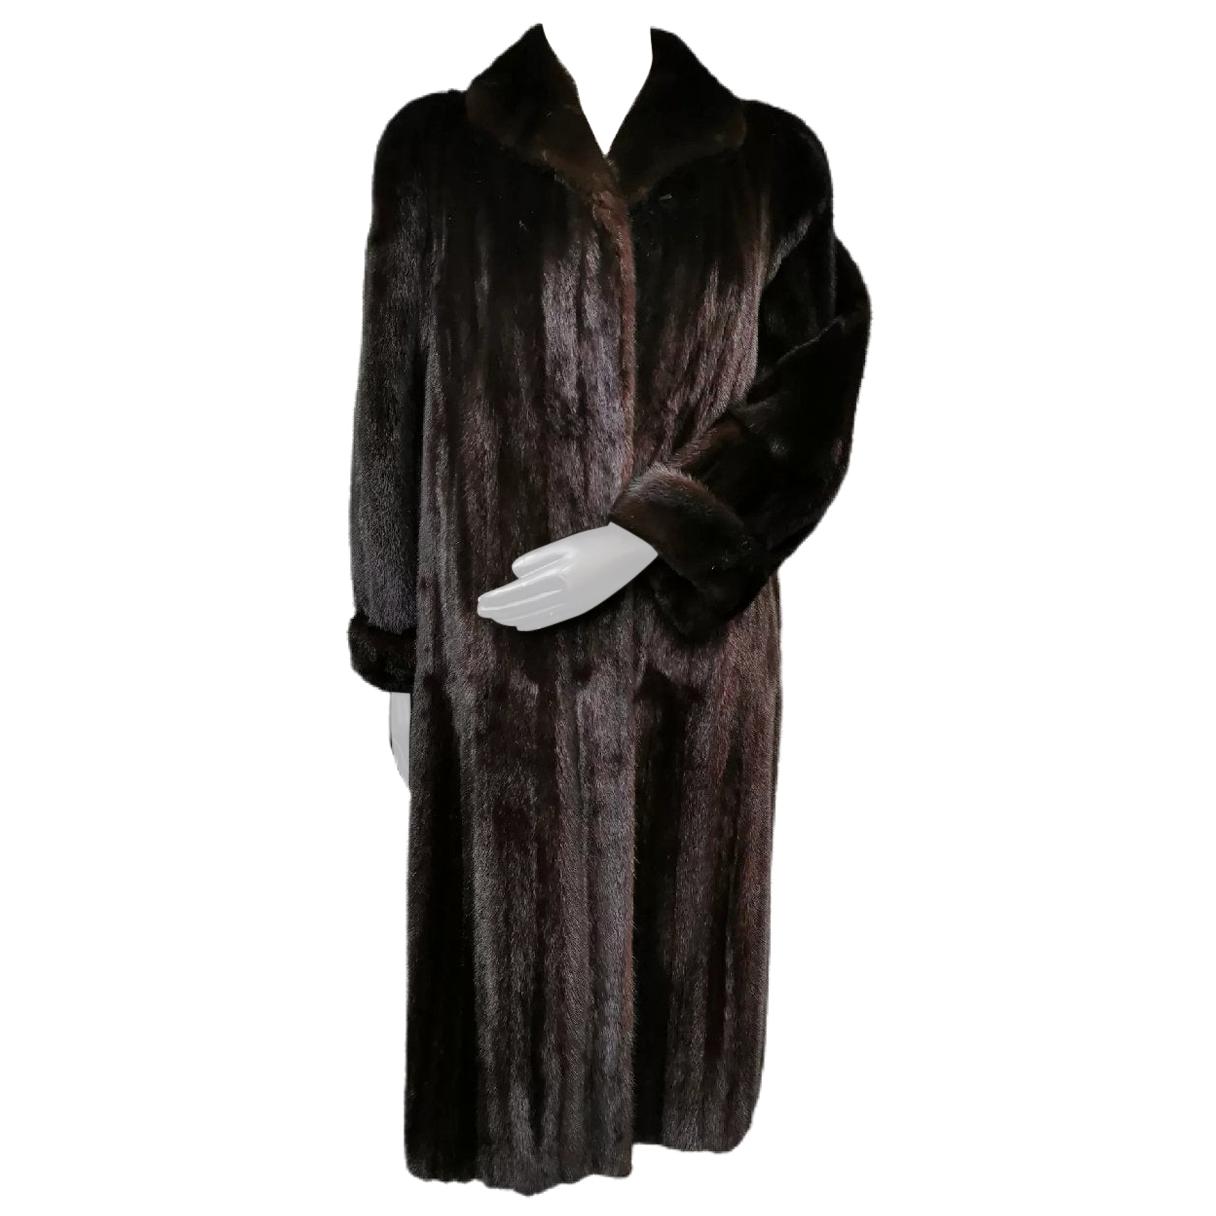  Birger christensen mink fur coat size 6